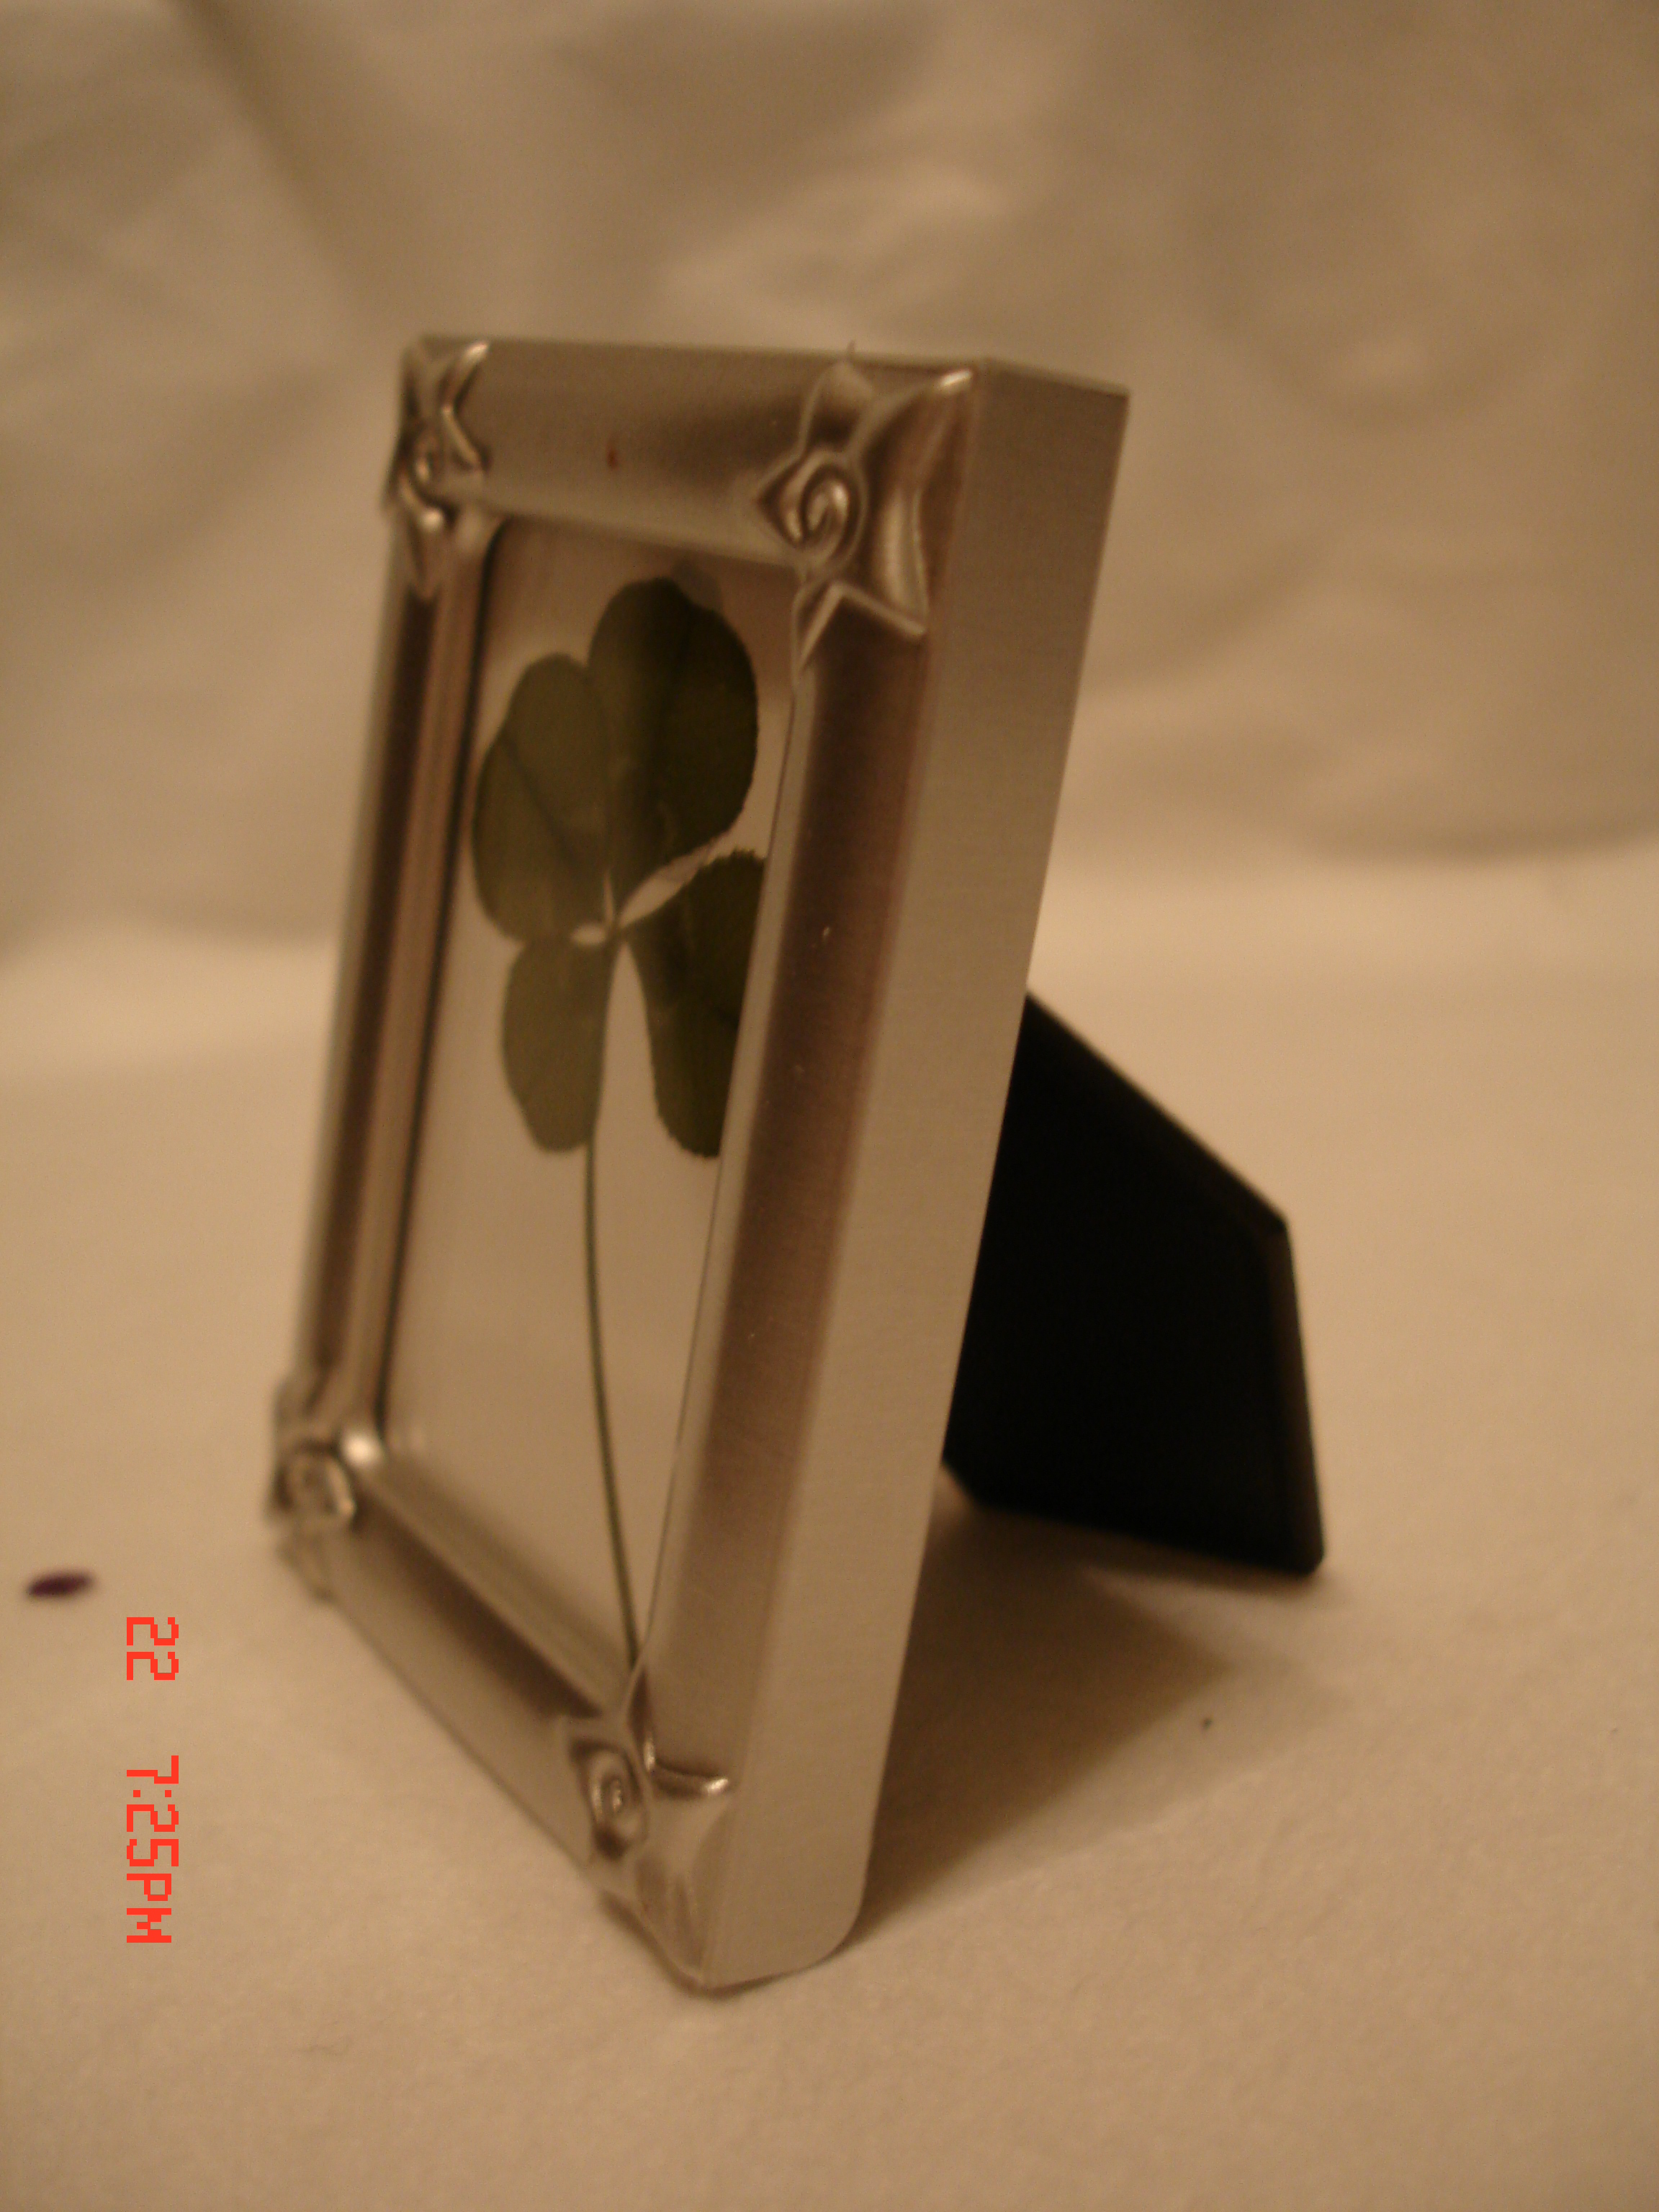 4_leaf_clover_in_silver_frame.JPG